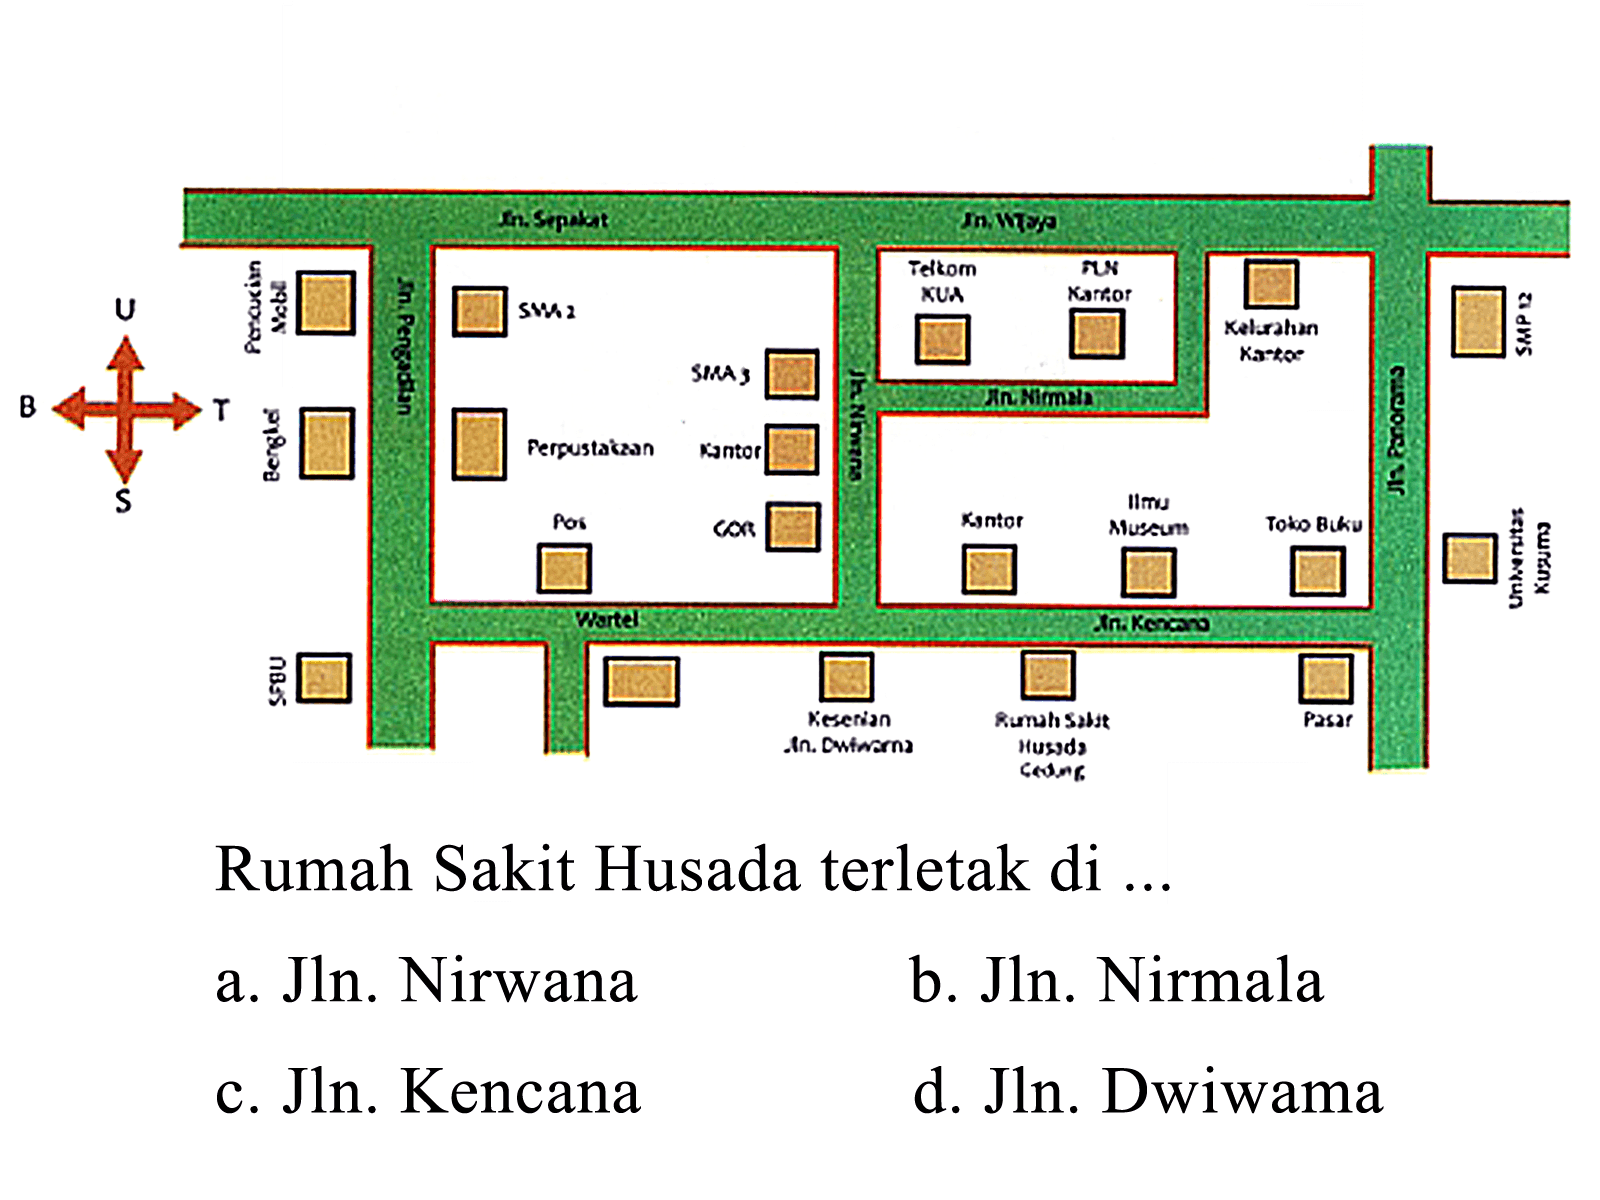 Rumah Sakit Husada terletak di ...
a. Jln. Nirwana
b. Jln. Nirmala
c. JIn. Kencana
d. Jn. Dwiwama